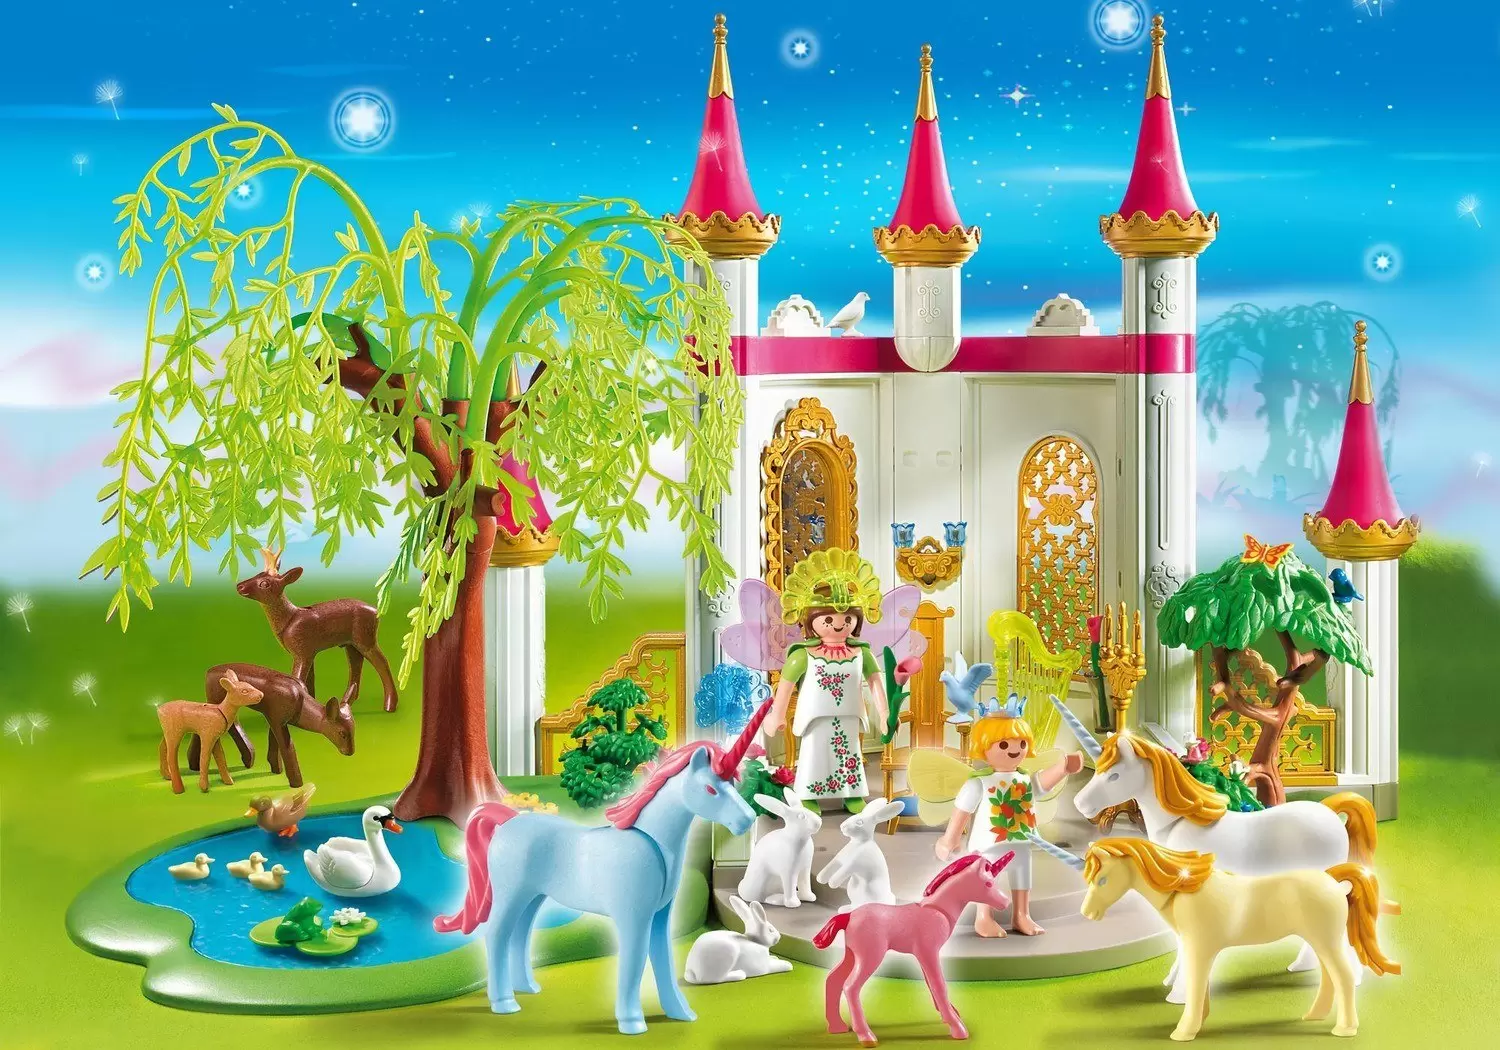 Playmobil Fairies - Fairy land castle